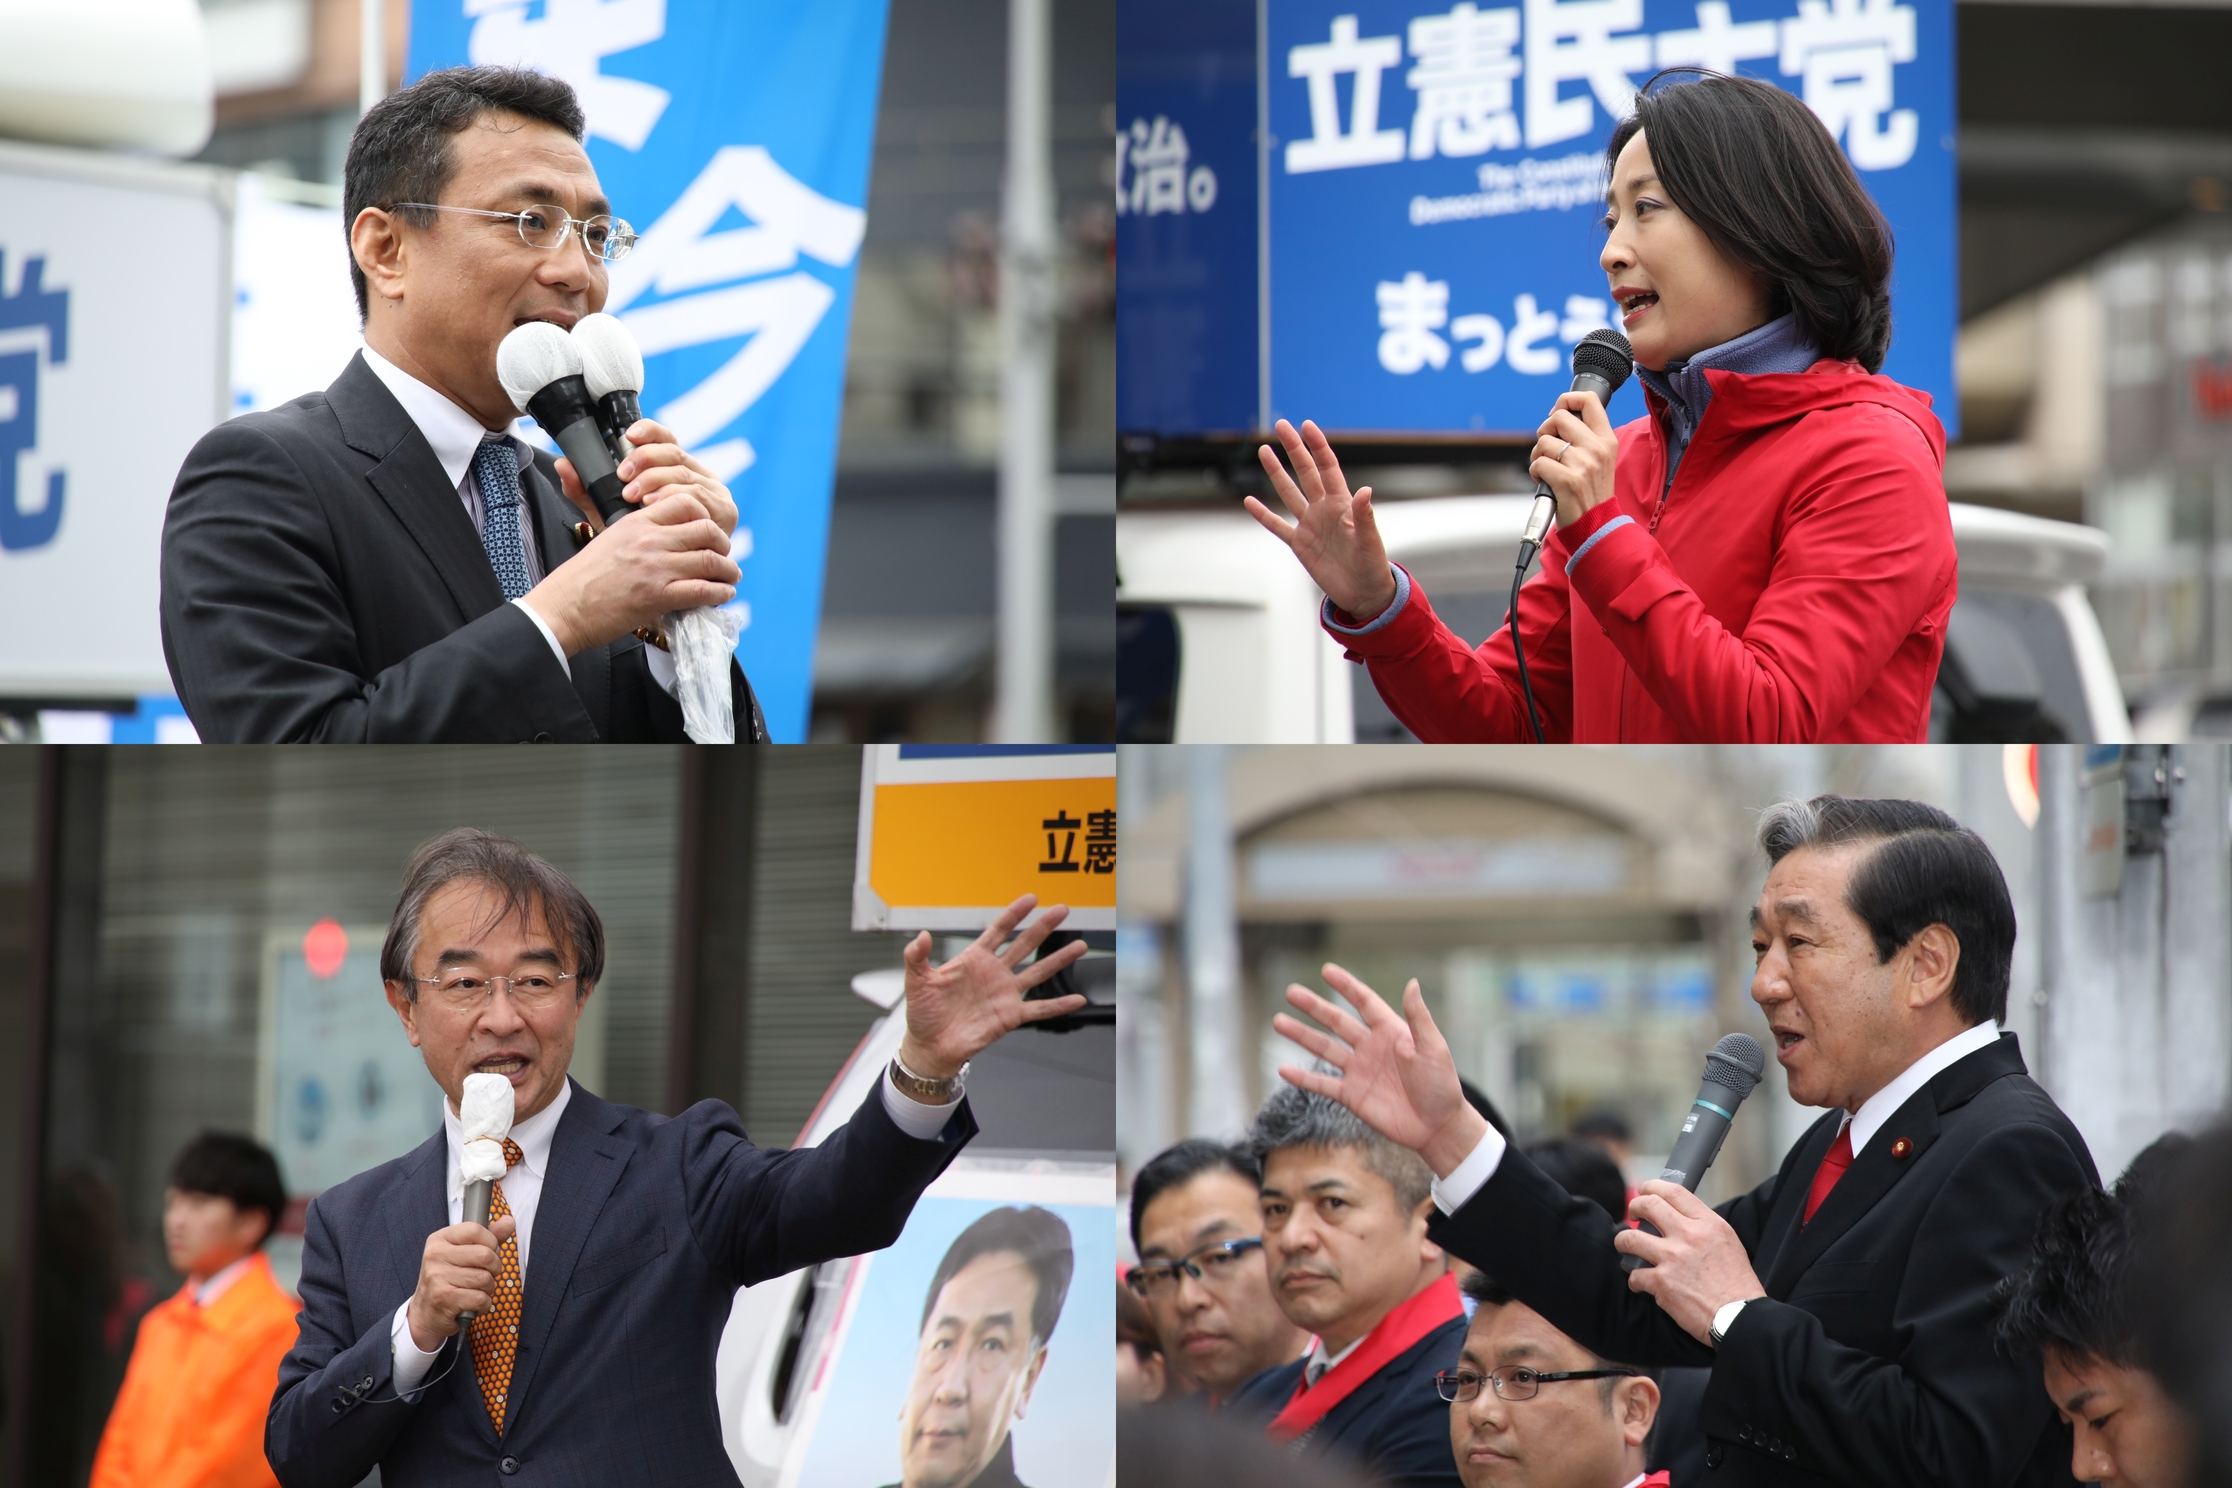 左上から時計回りで、松田衆院議員、田島支部長、赤松衆院副議長、近藤県連代表